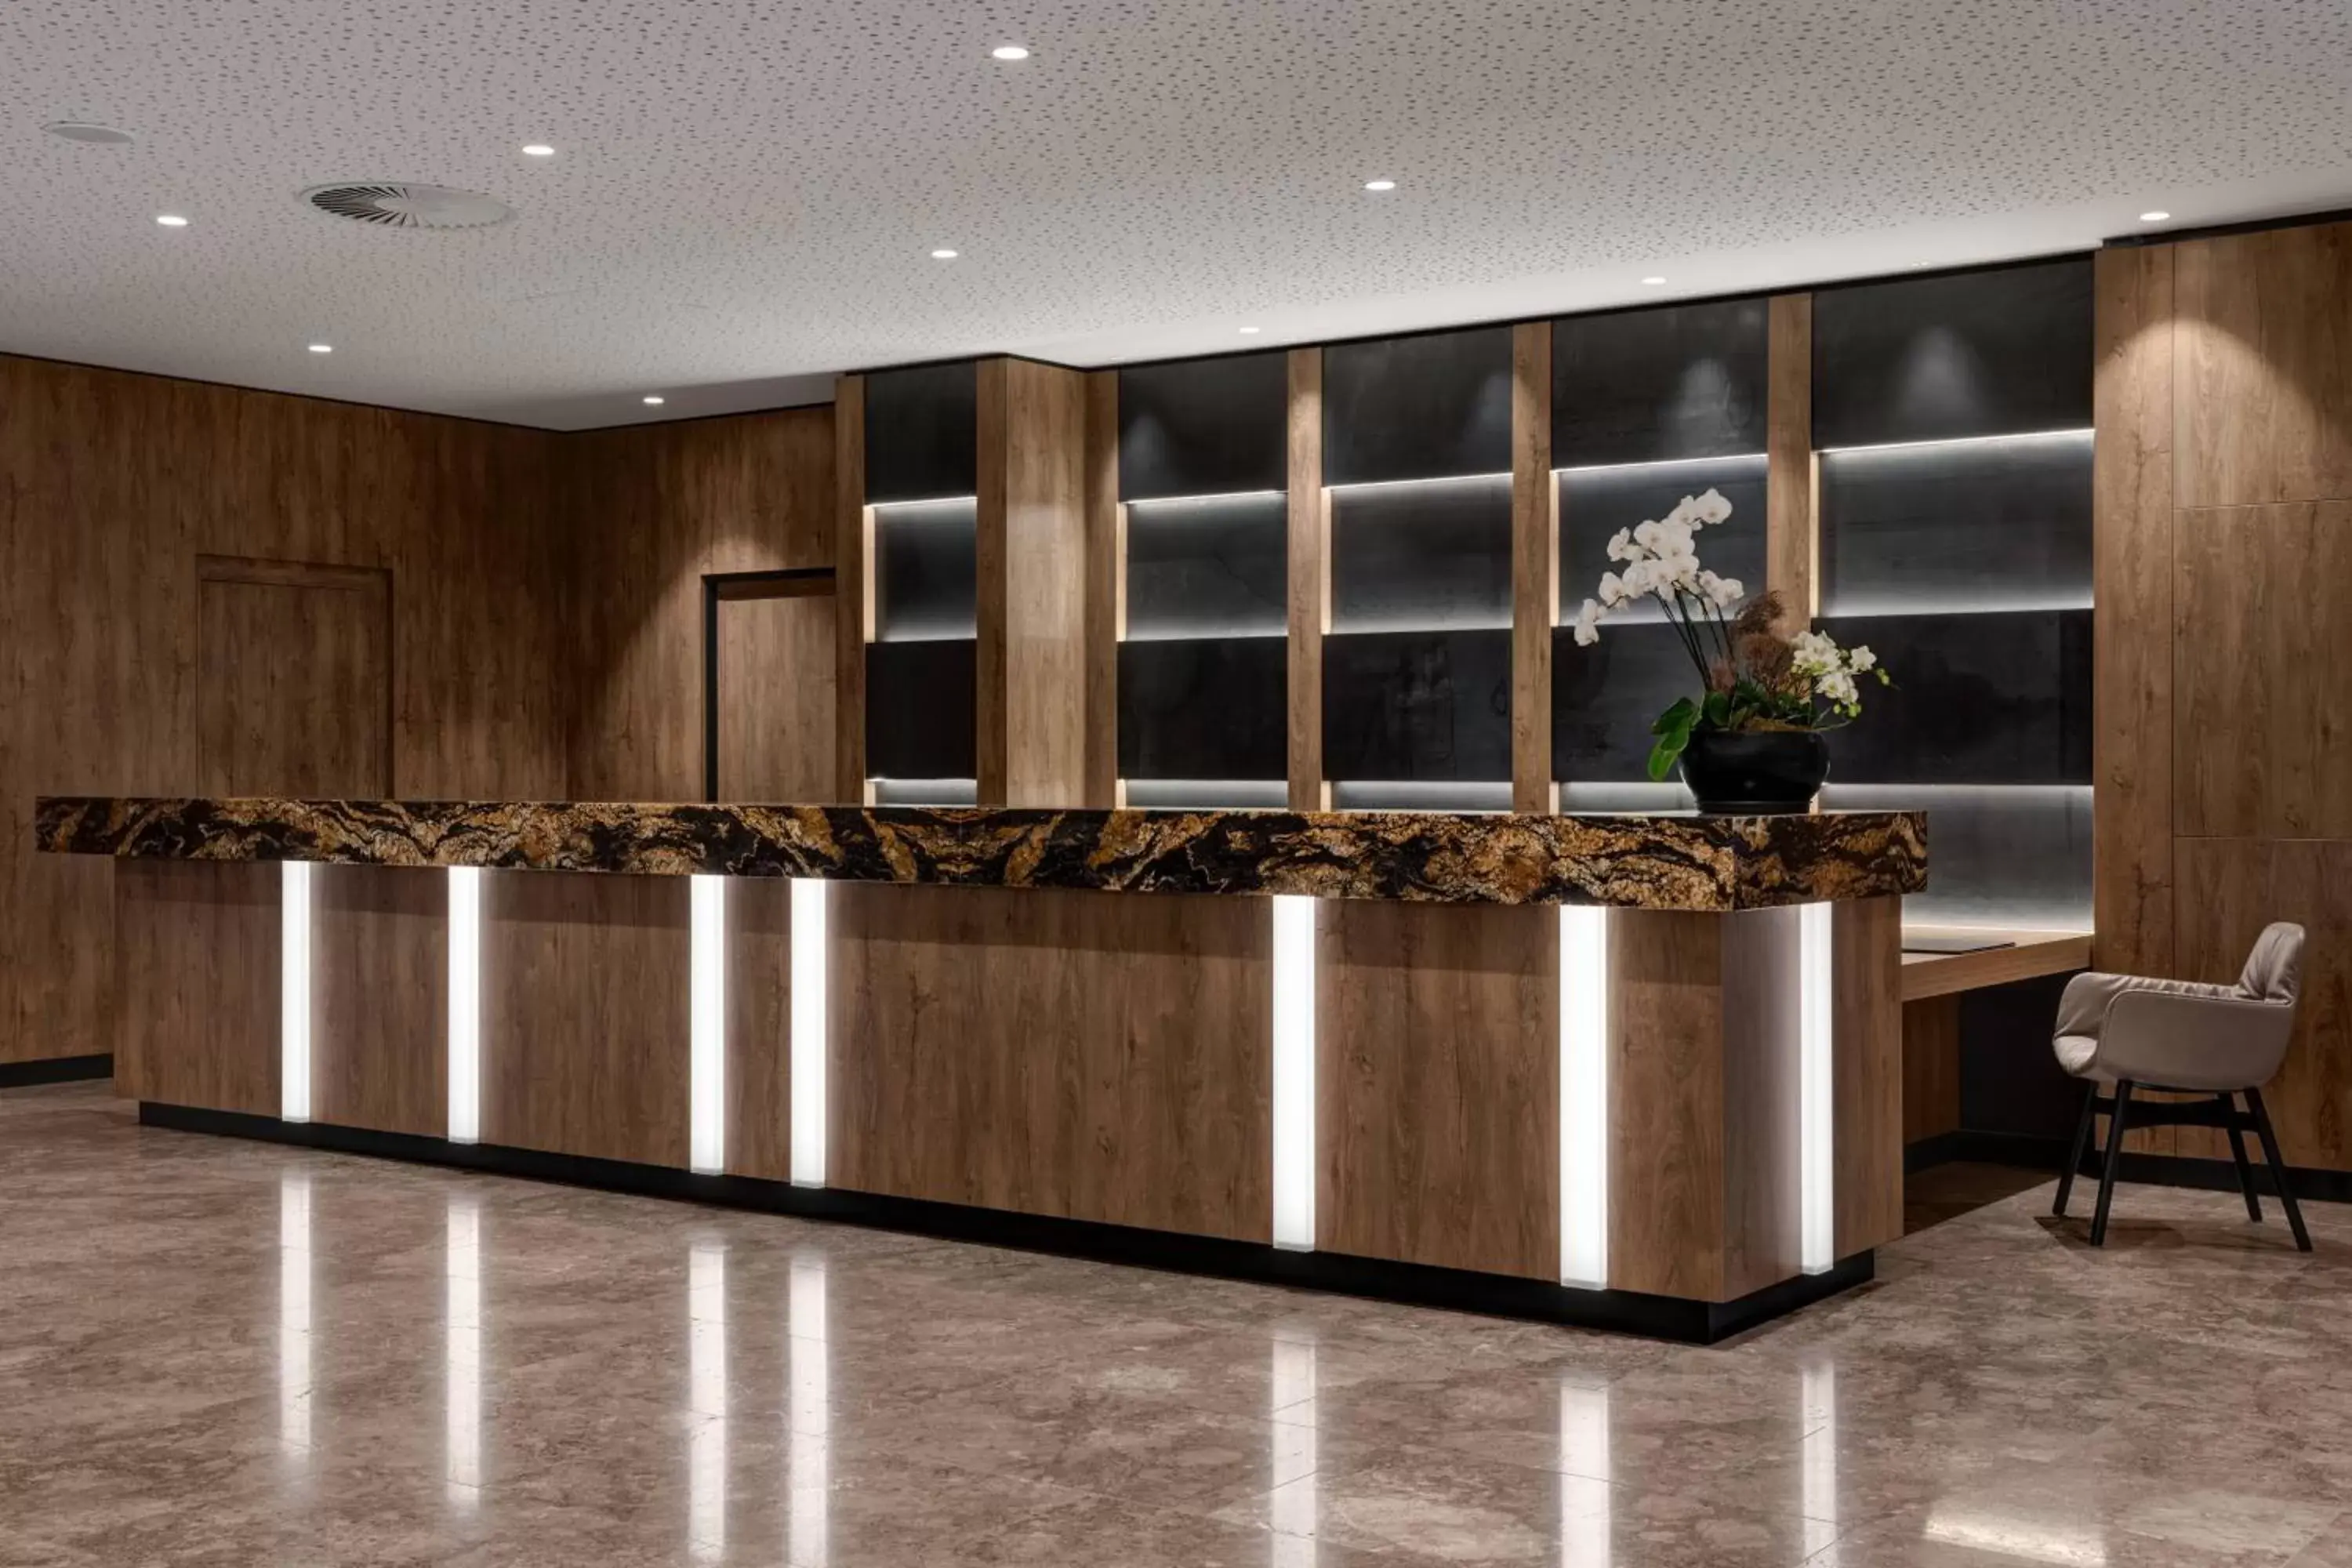 Lobby or reception, Lobby/Reception in AC Hotel by Marriott Innsbruck